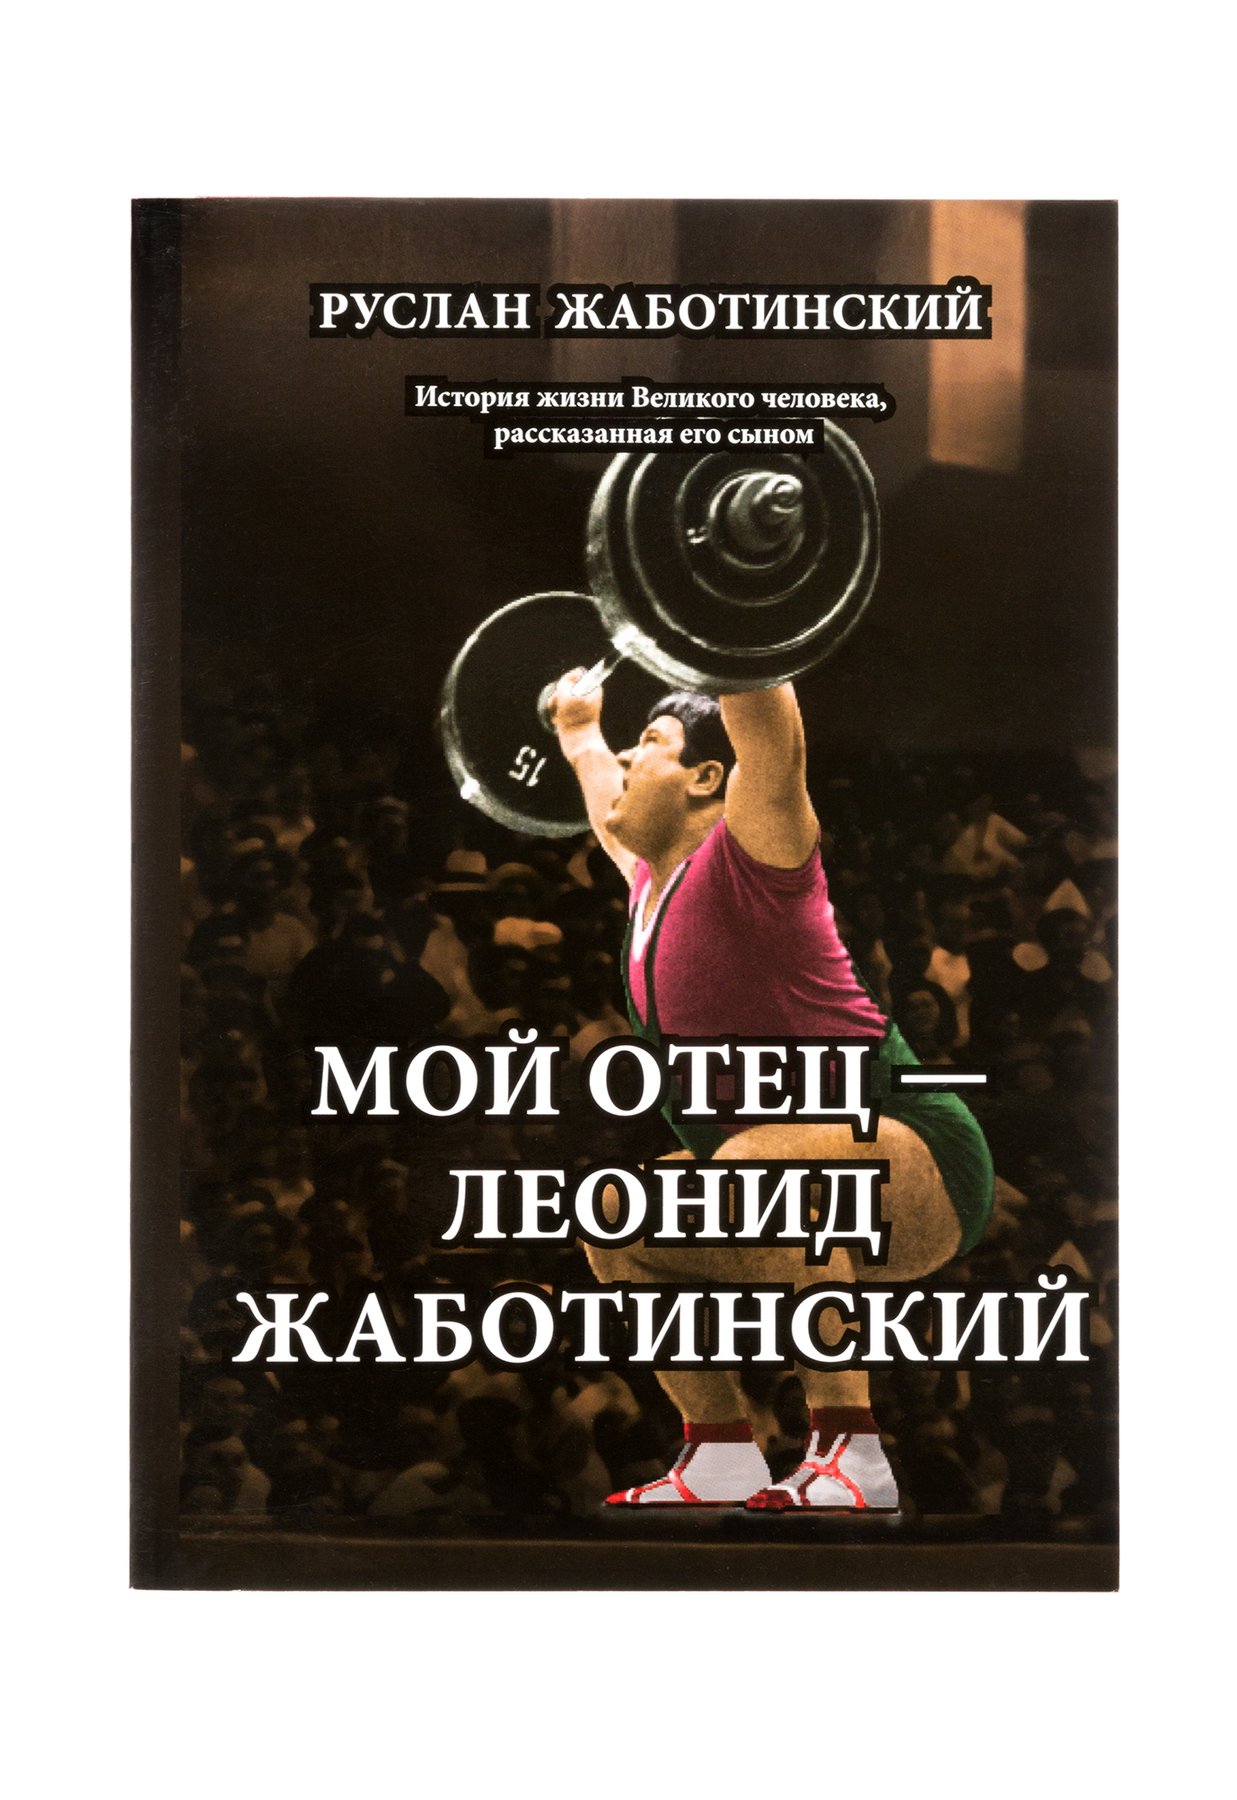 Книга Мій батько Леонід Жаботинський,  PDF